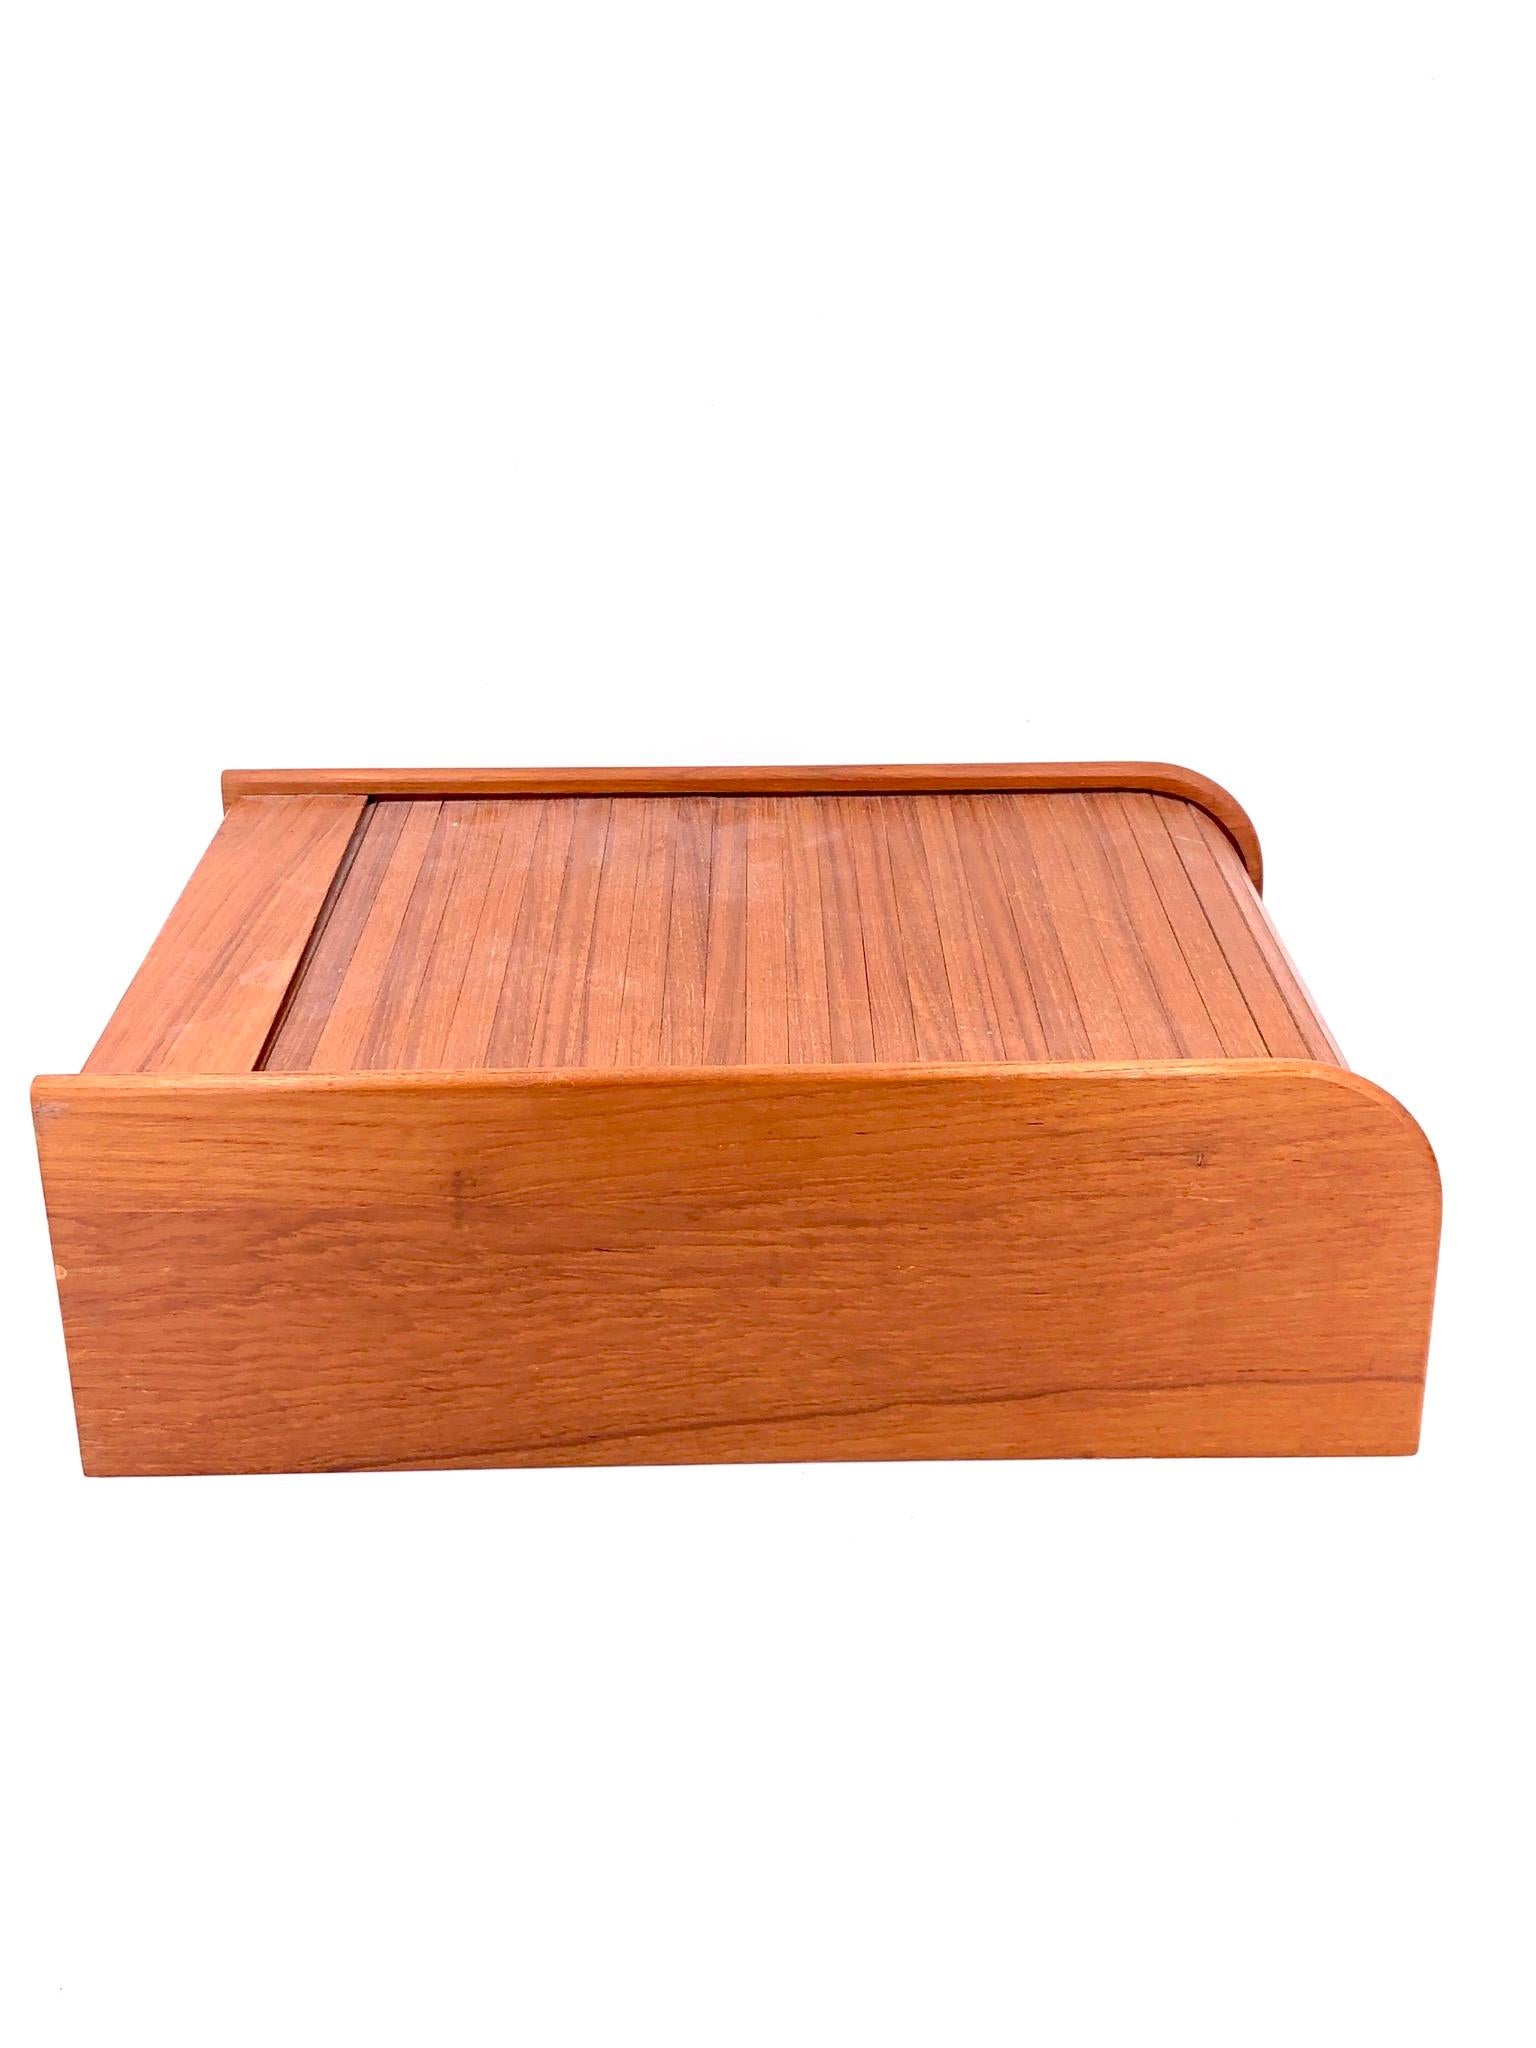 tambour box